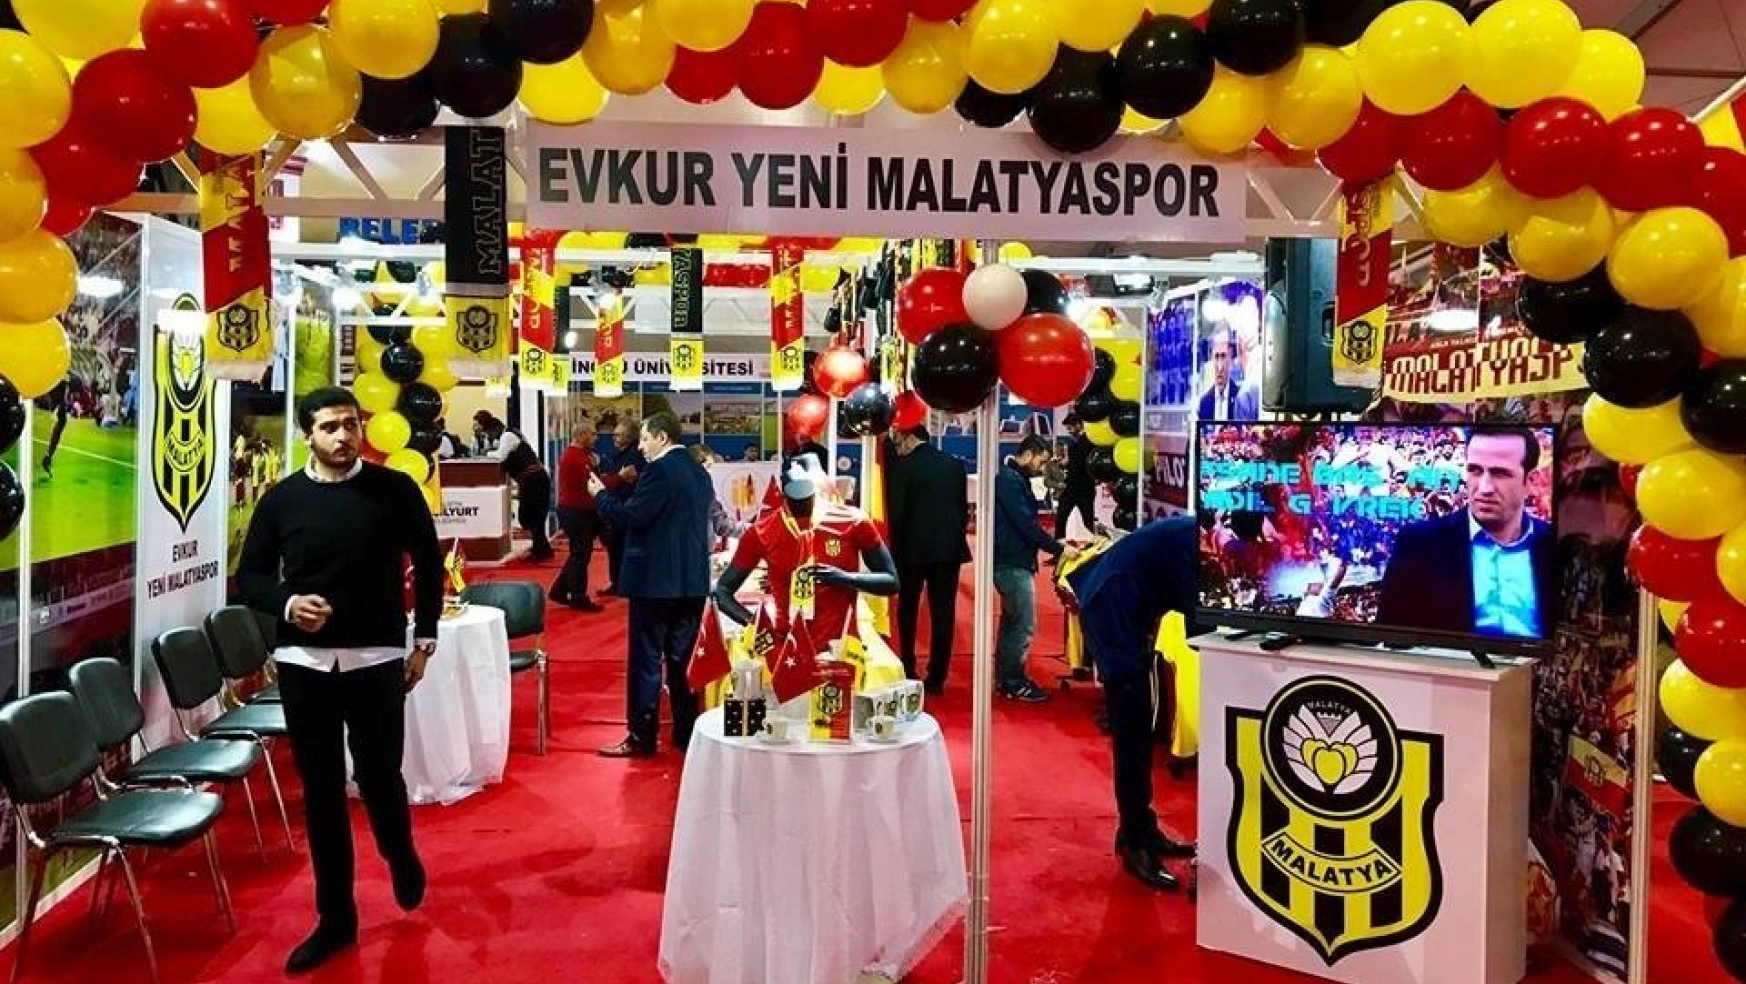 E. Yeni Malatyaspor standına yoğun ilgi
